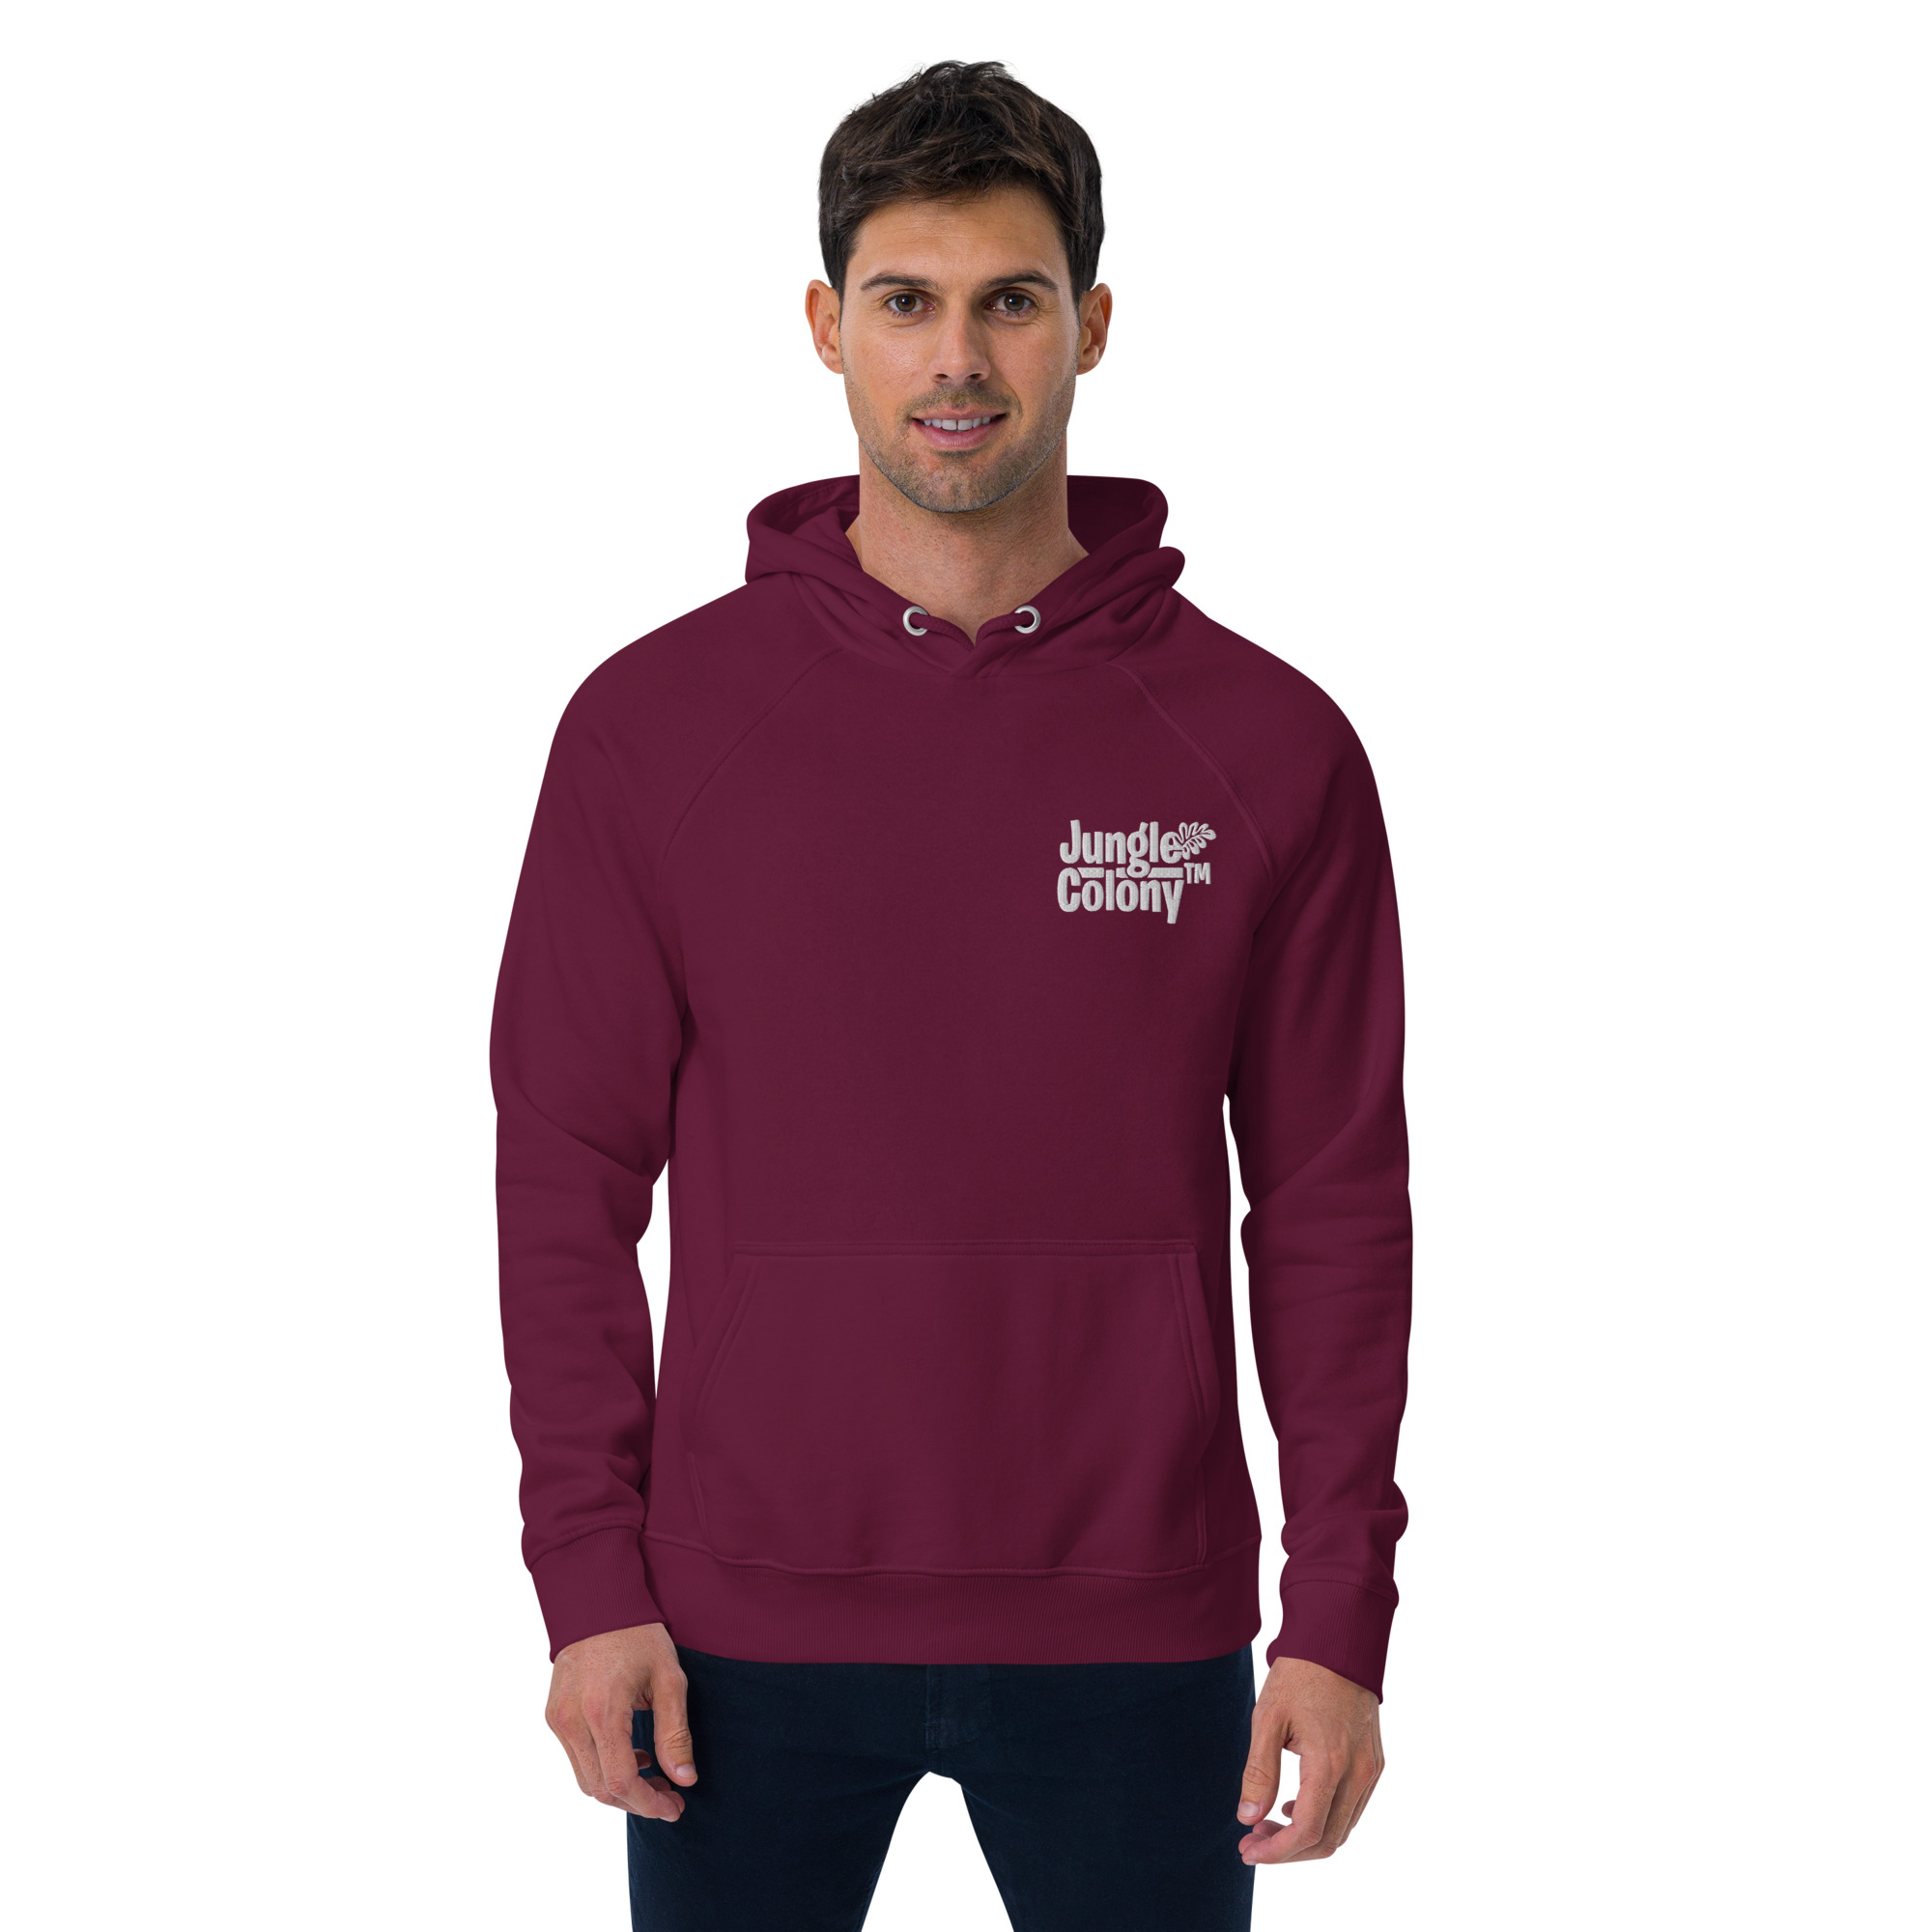 unisex-eco-raglan-hoodie-burgundy-front-6420086c86a94.jpg